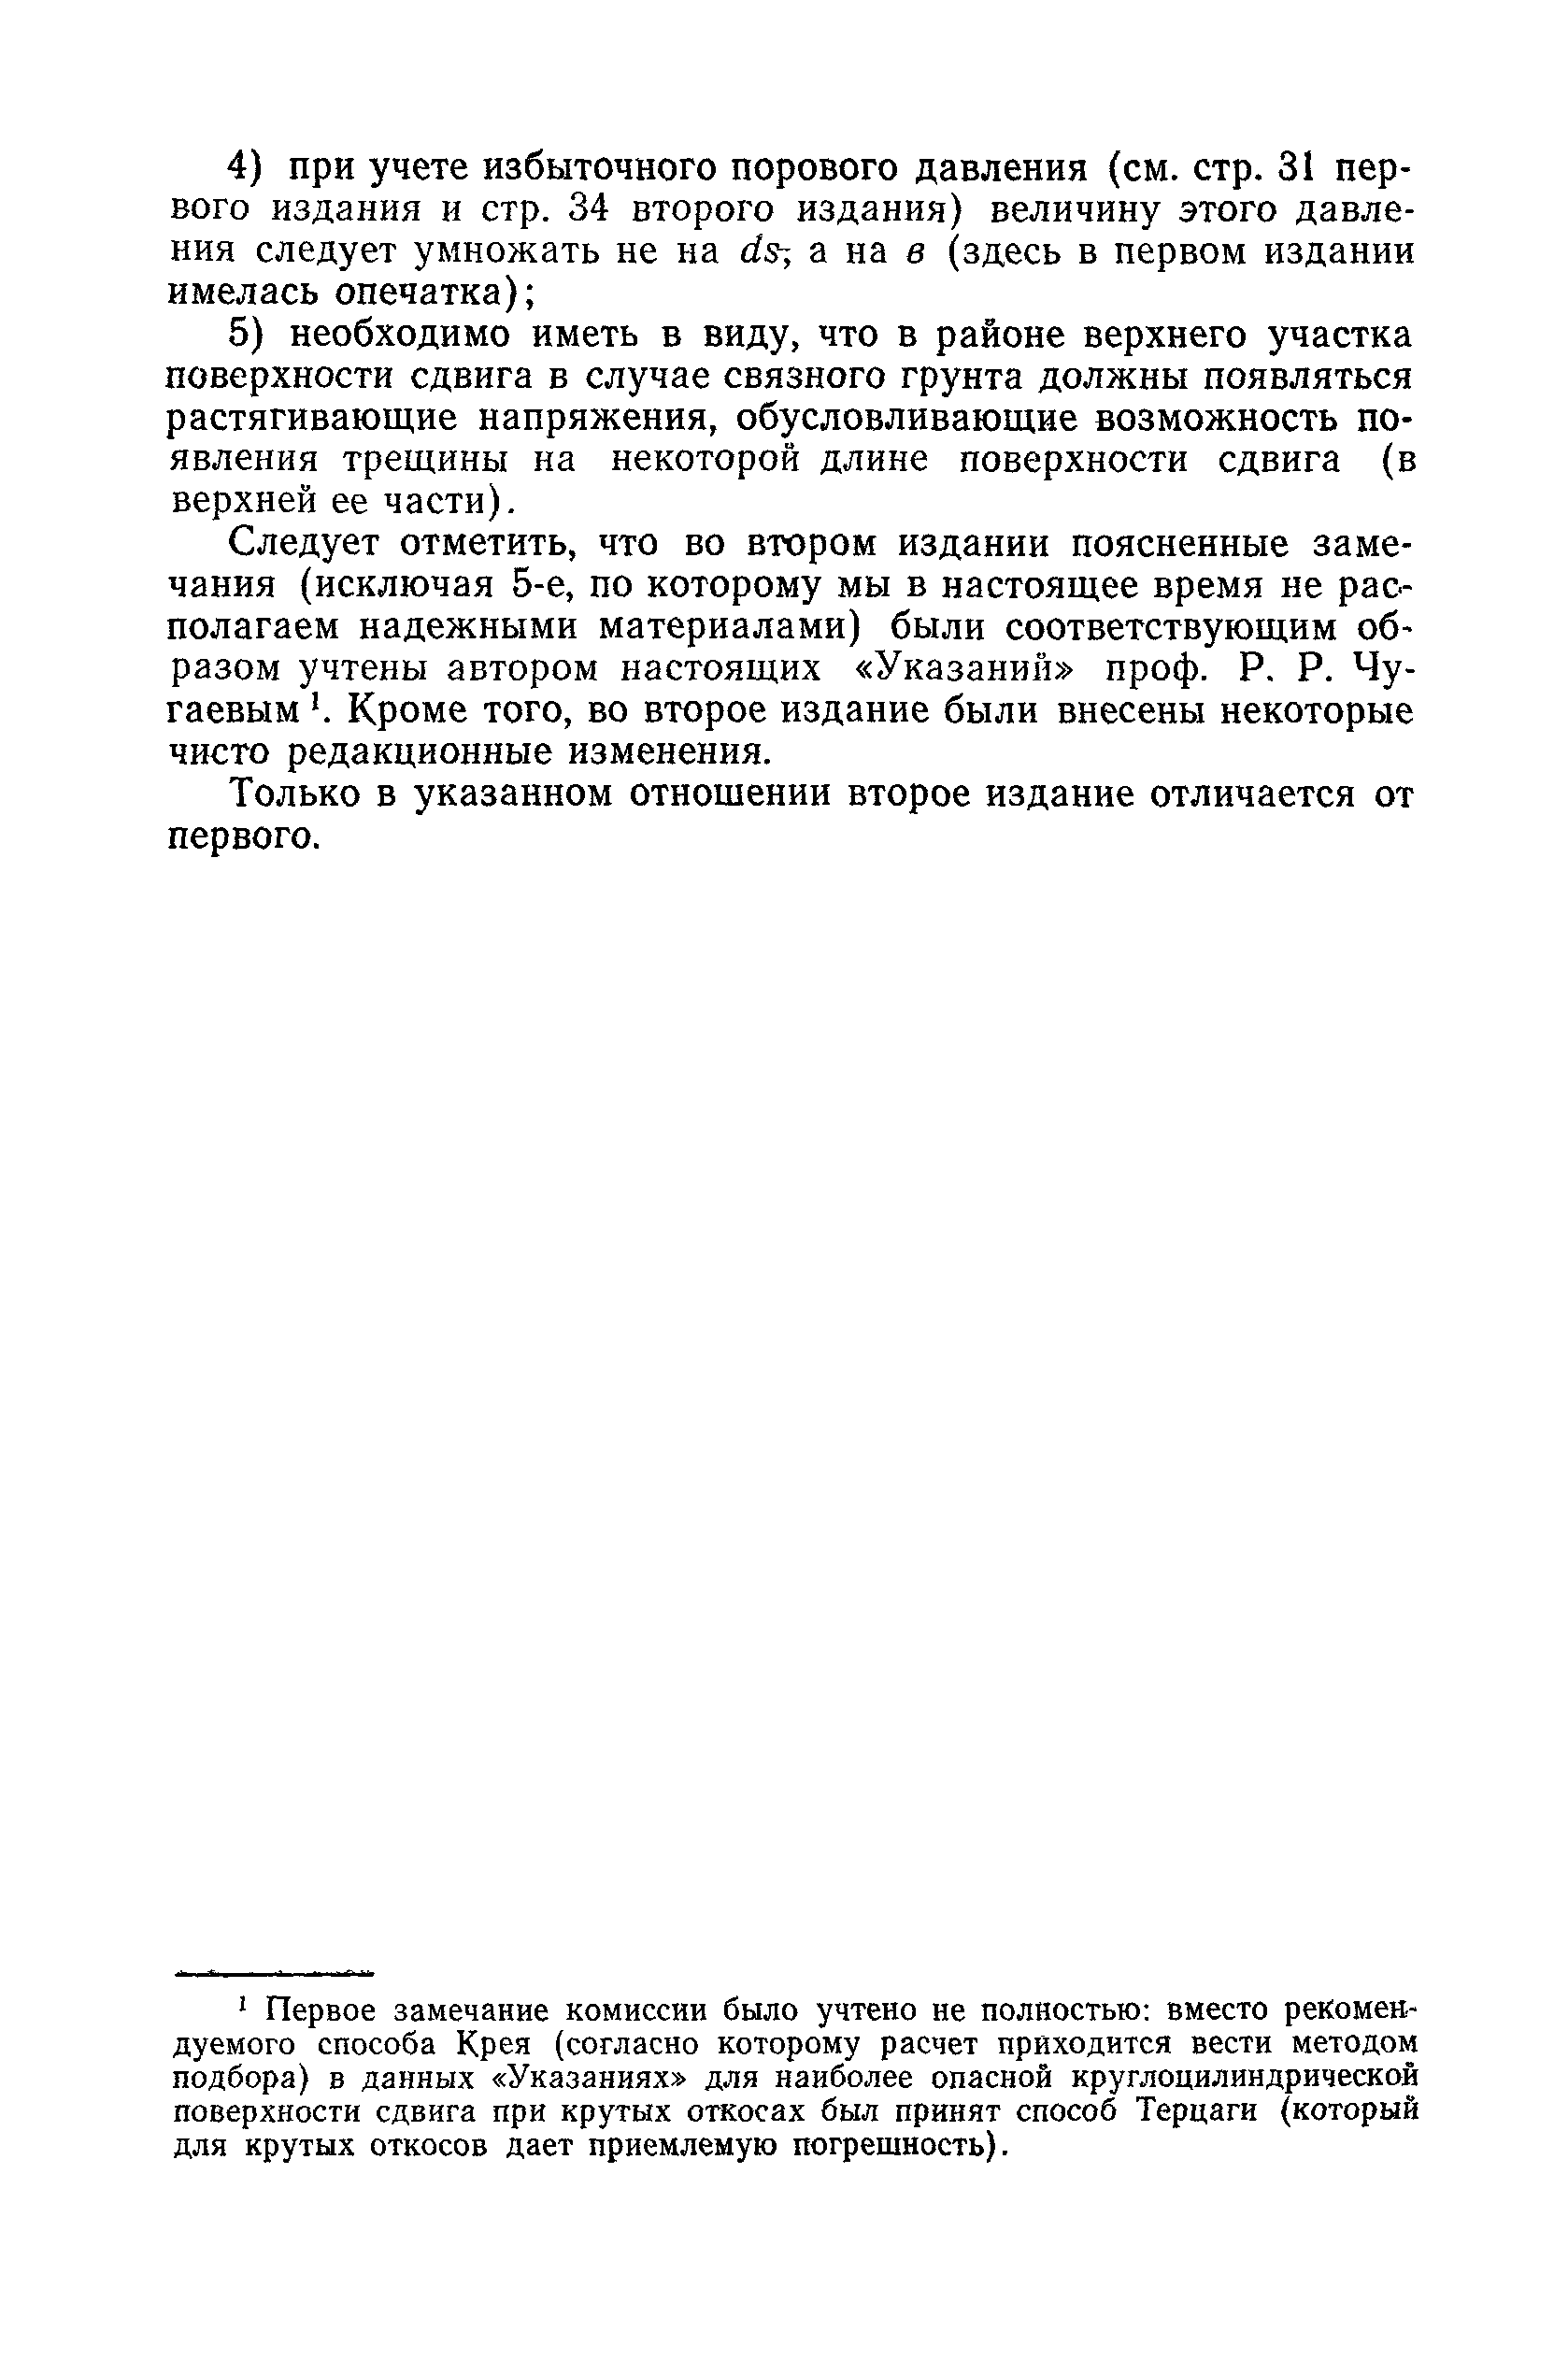 ВСН 04-71